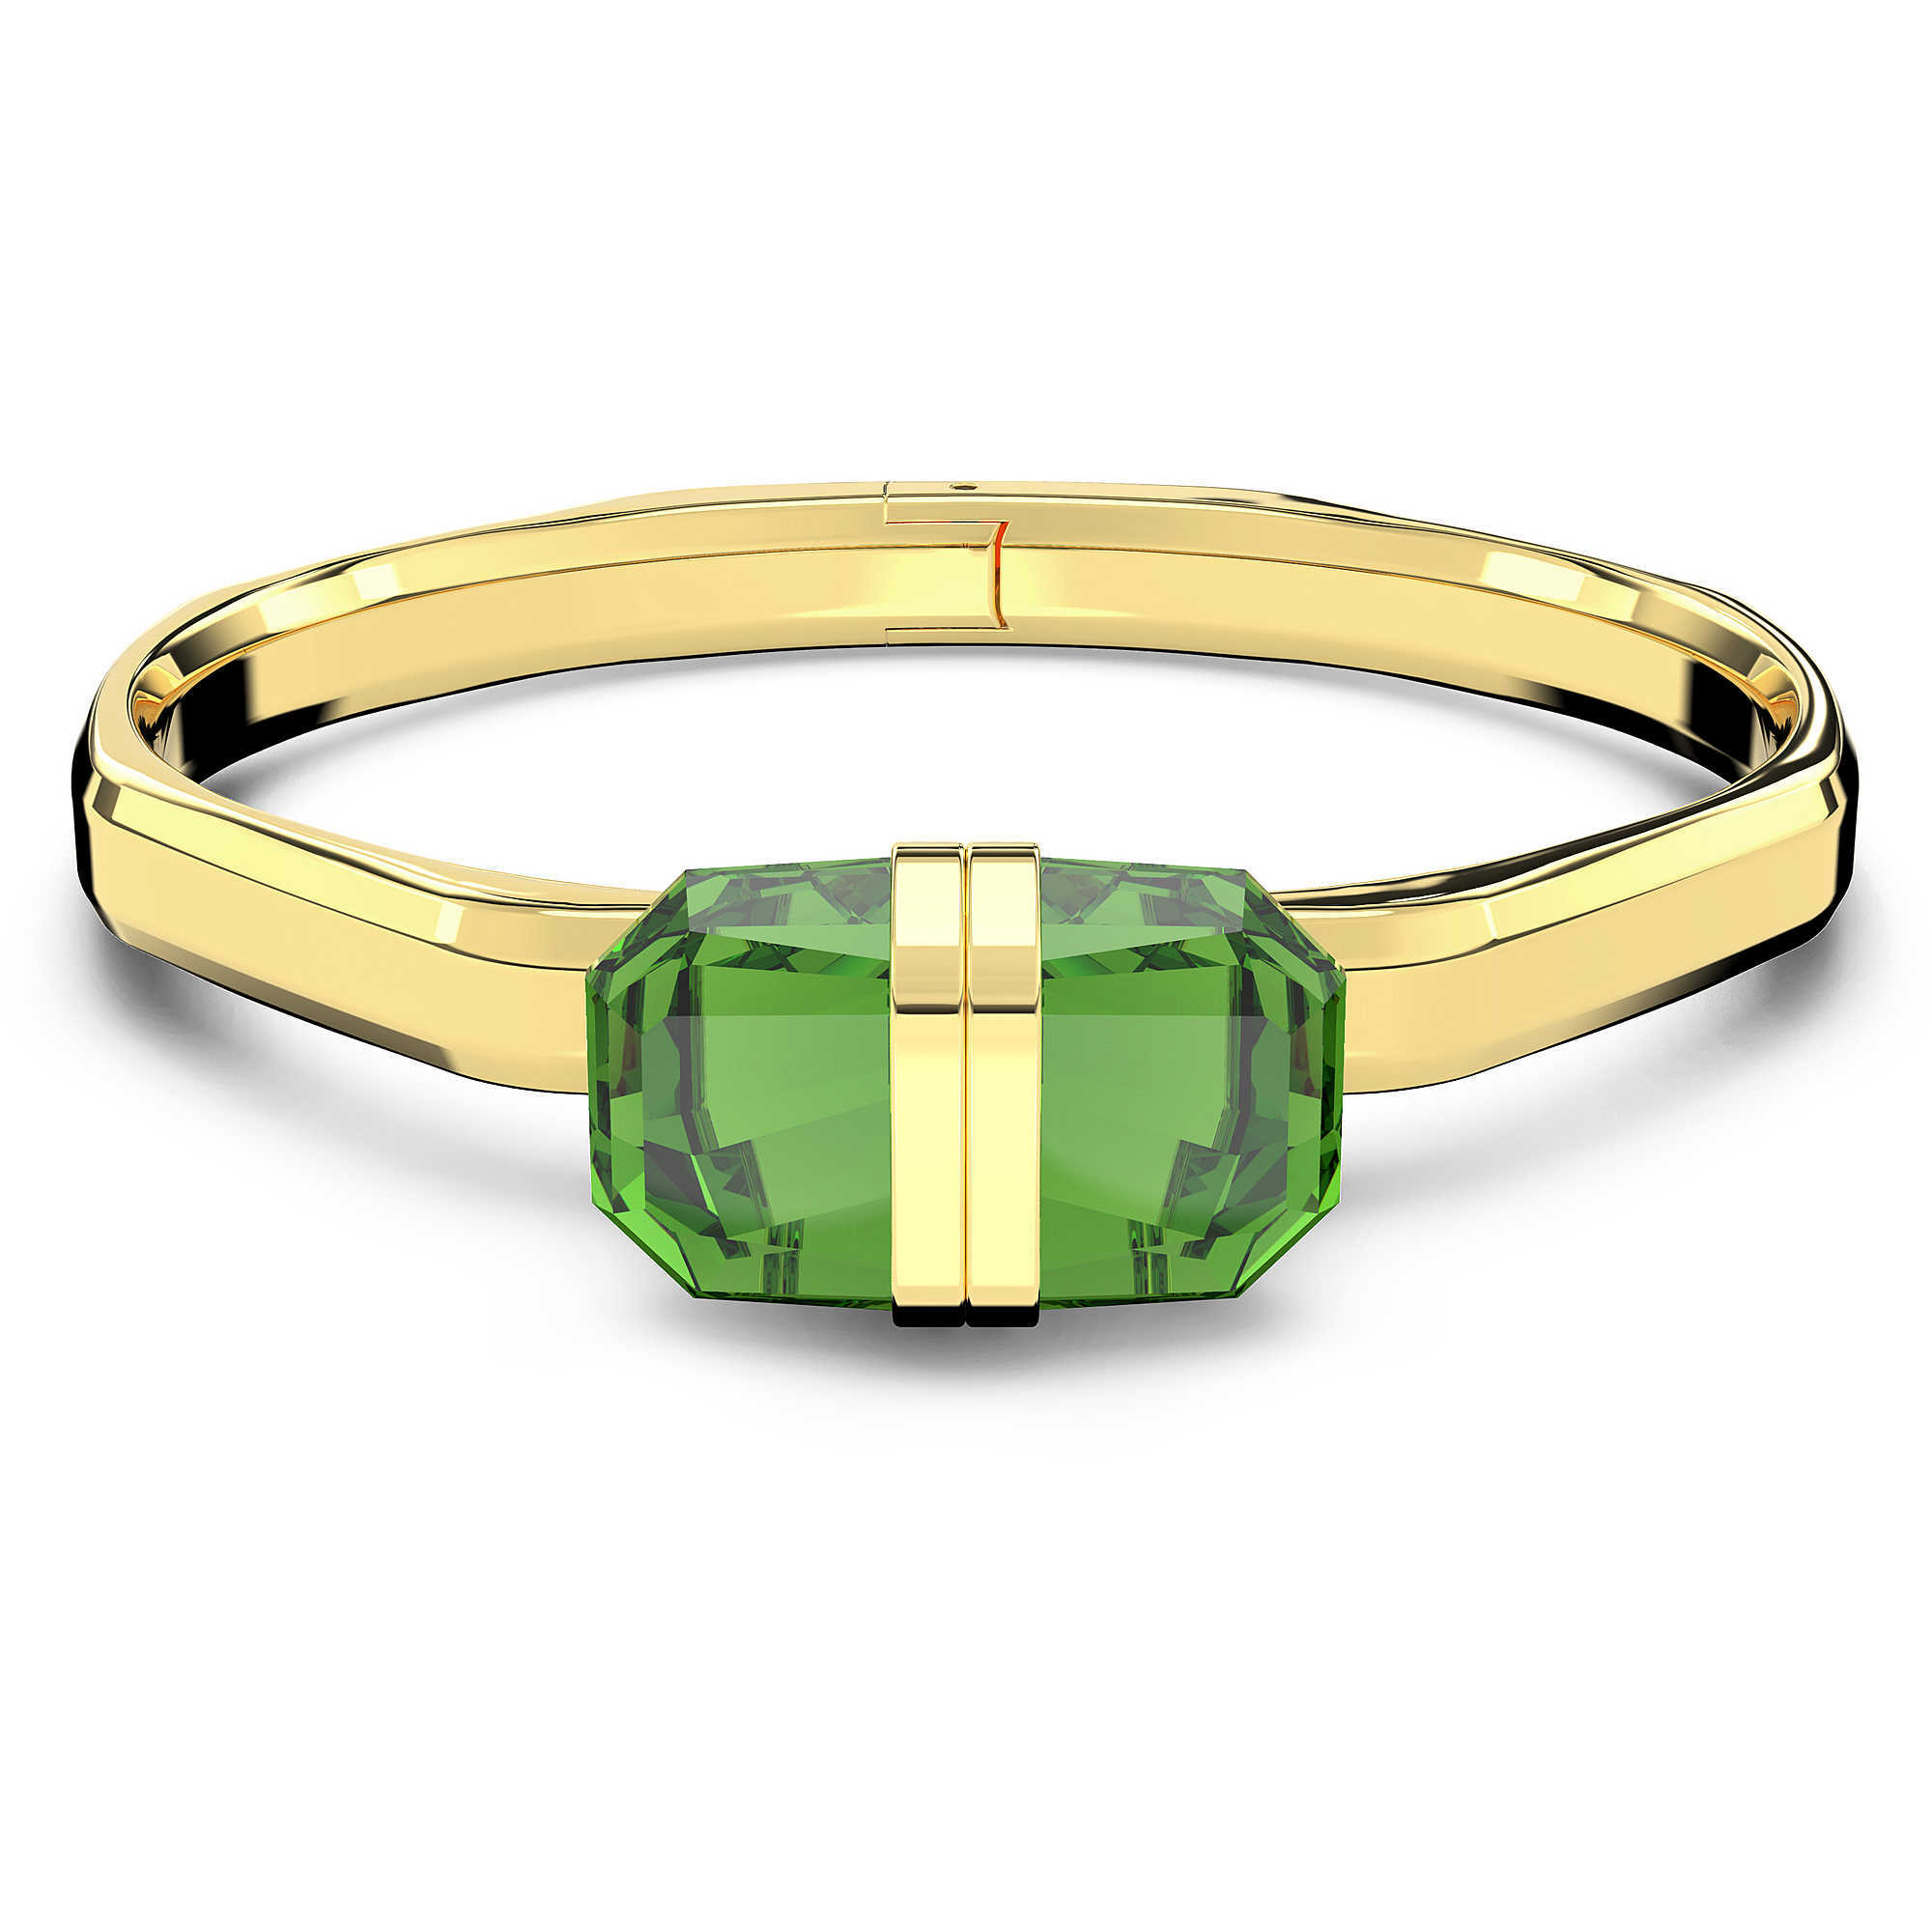 Swarovski Pozlacený pevný náramek s zelenými krystaly Lucent 5633624 M (5,6 x 4,6 cm)